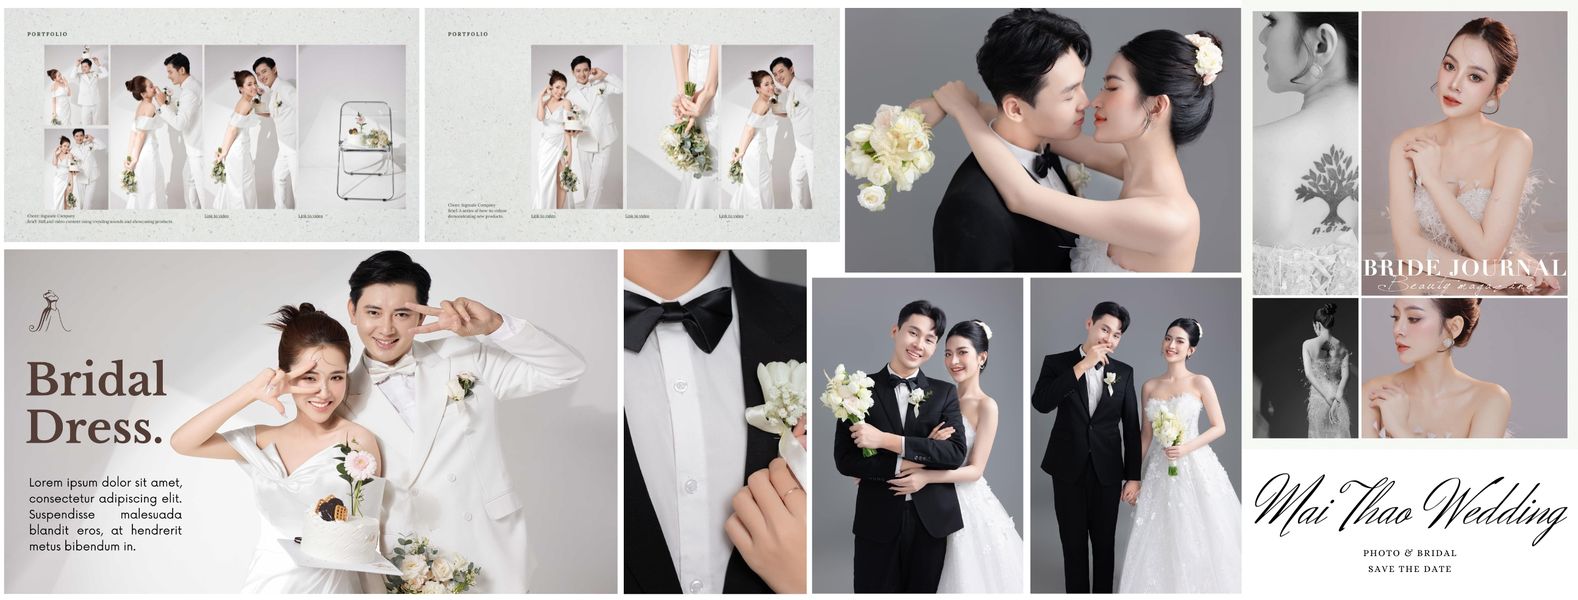 Mai Thao Wedding - Váy Cưới,Chụp Ảnh Cưới Đẹp Diễn Châu ảnh 1